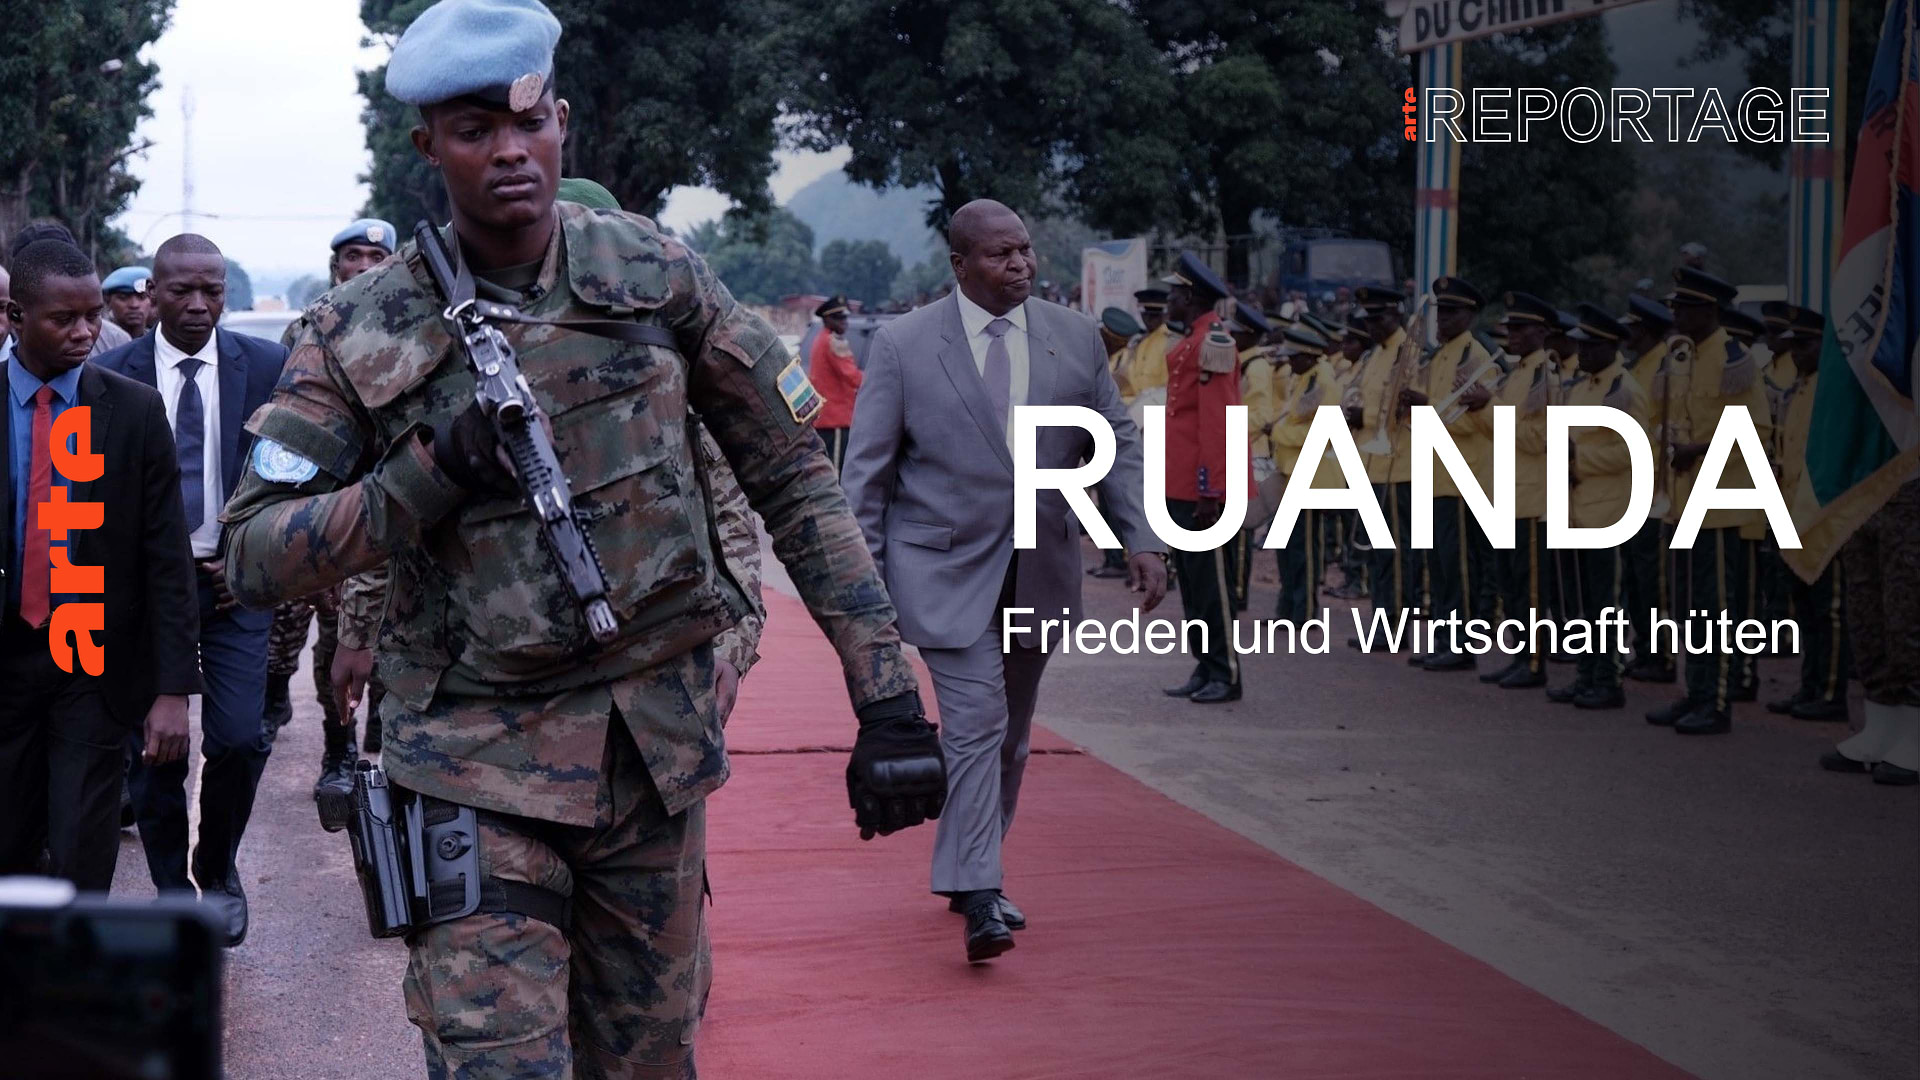 Ruanda: Frieden hüten und die Wirtschaft